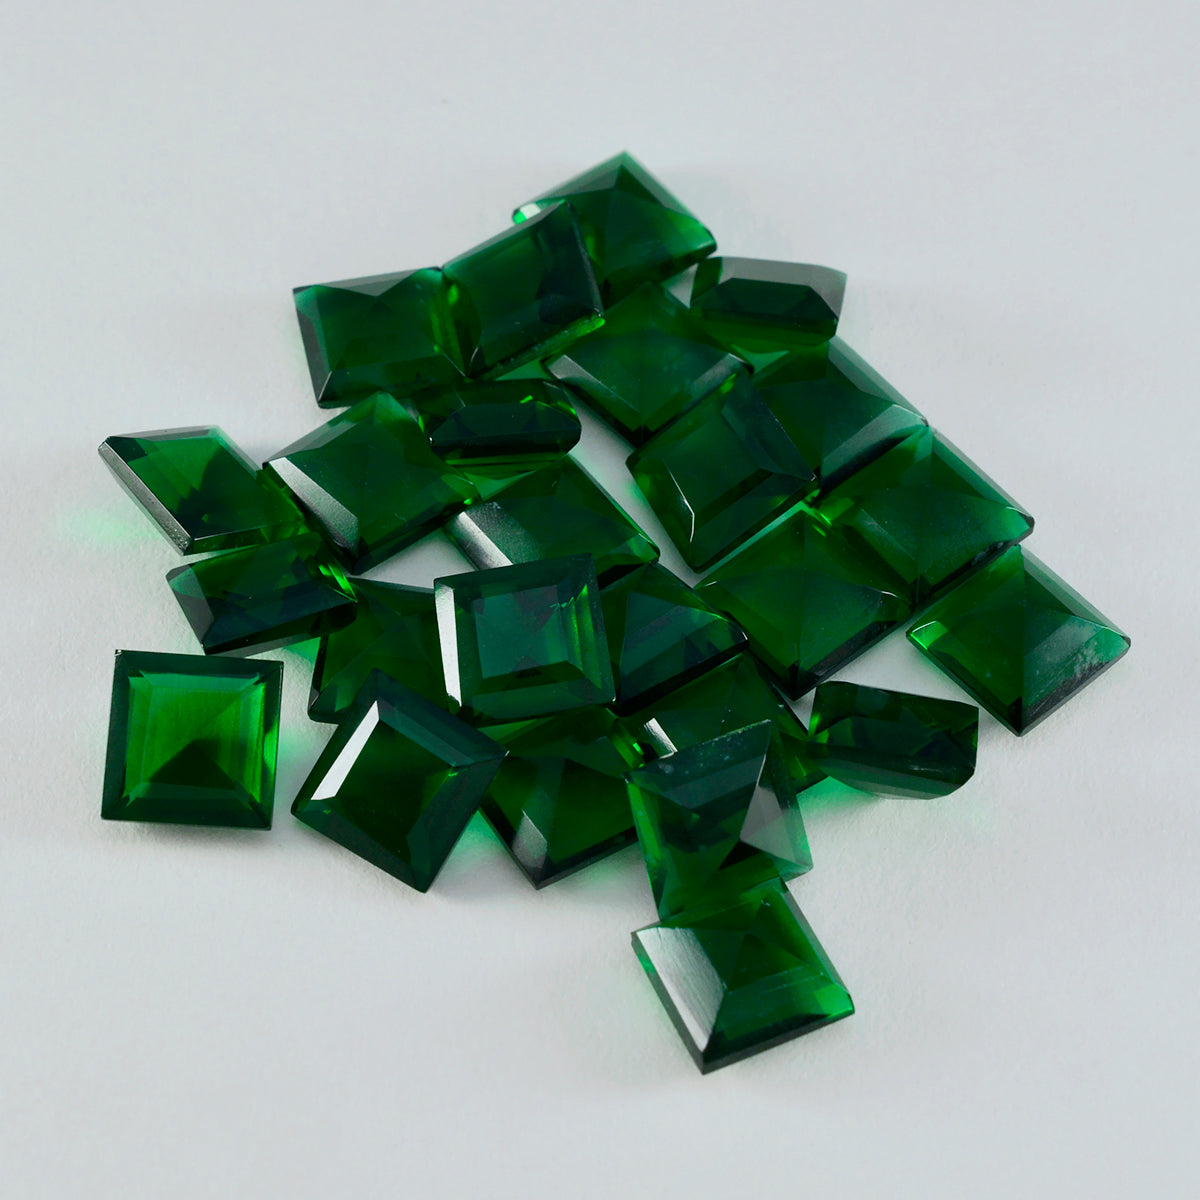 Riyogems 1 pieza verde esmeralda CZ facetada 10x10 mm forma cuadrada preciosa piedra preciosa de calidad